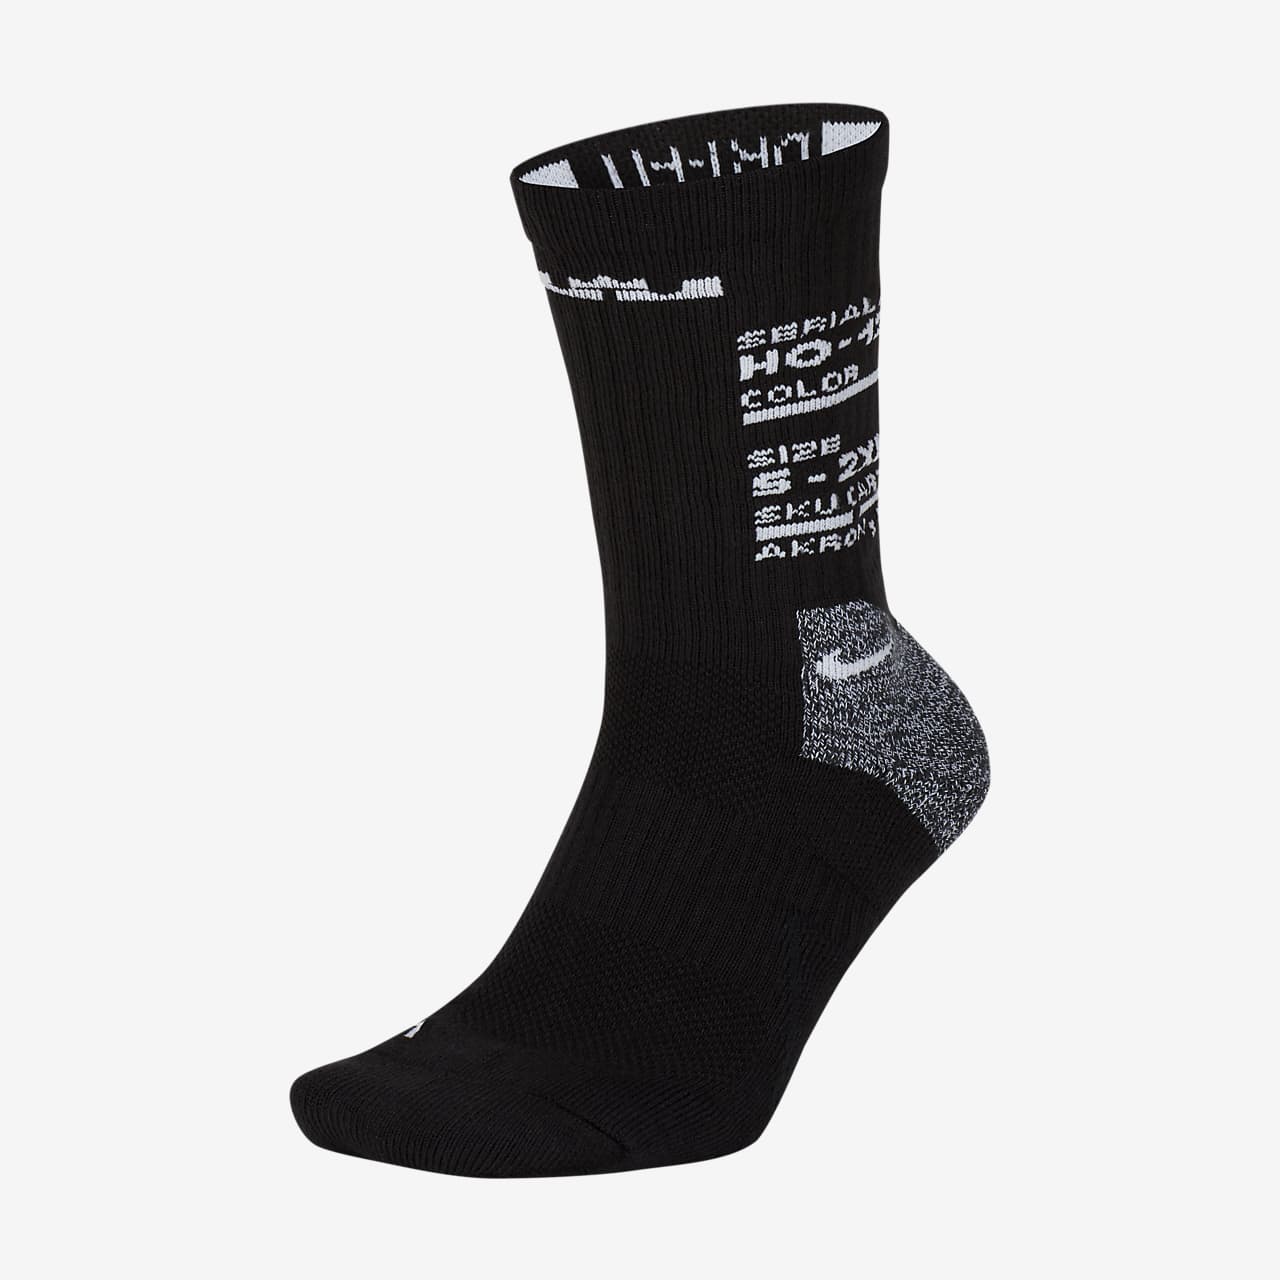 lebron james elite socks